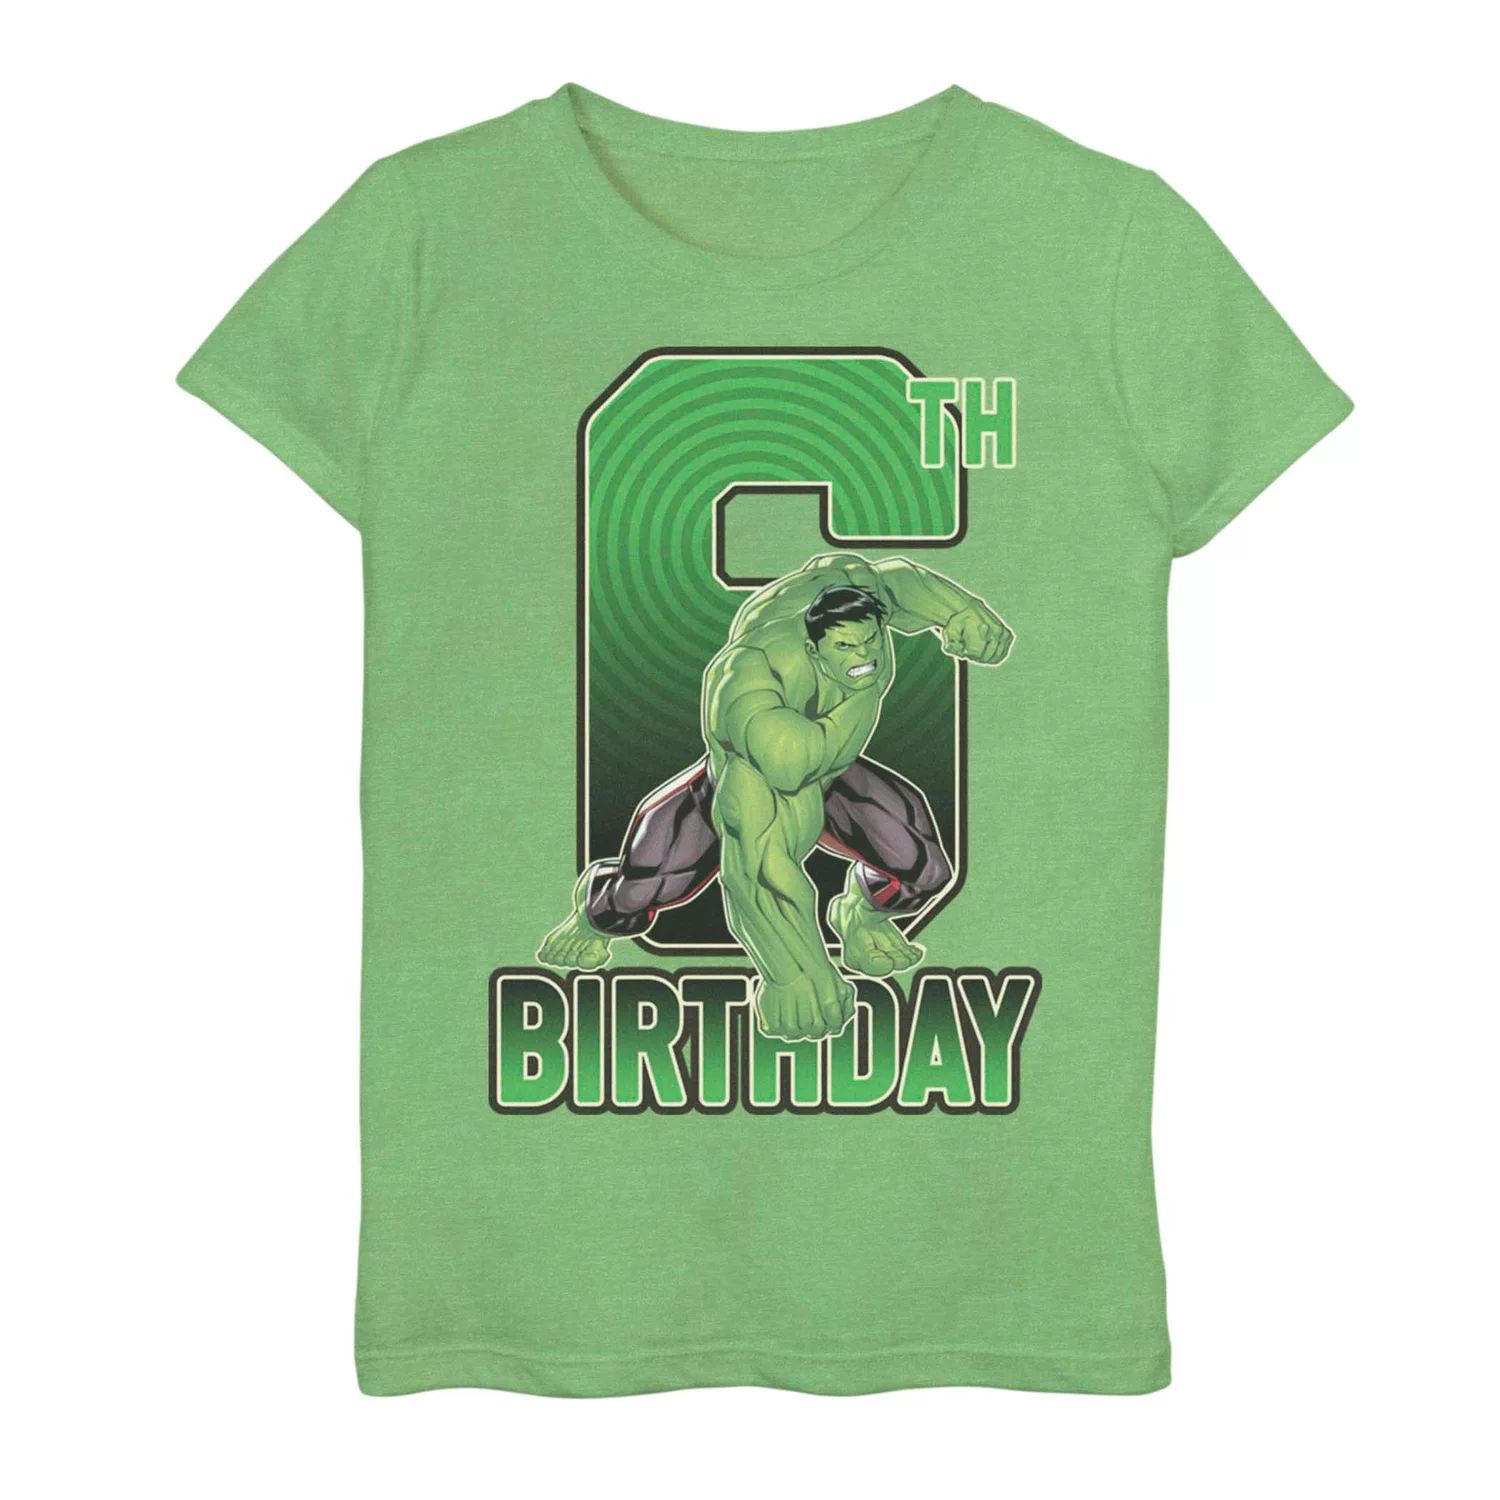 Футболка на 6-й день рождения для девочек 7–16 лет с изображением Марвел Халка Licensed Character футболка с изображением рожденного февраля 1950 года ограниченный выпуск подарки на 70 й день рождения футболка